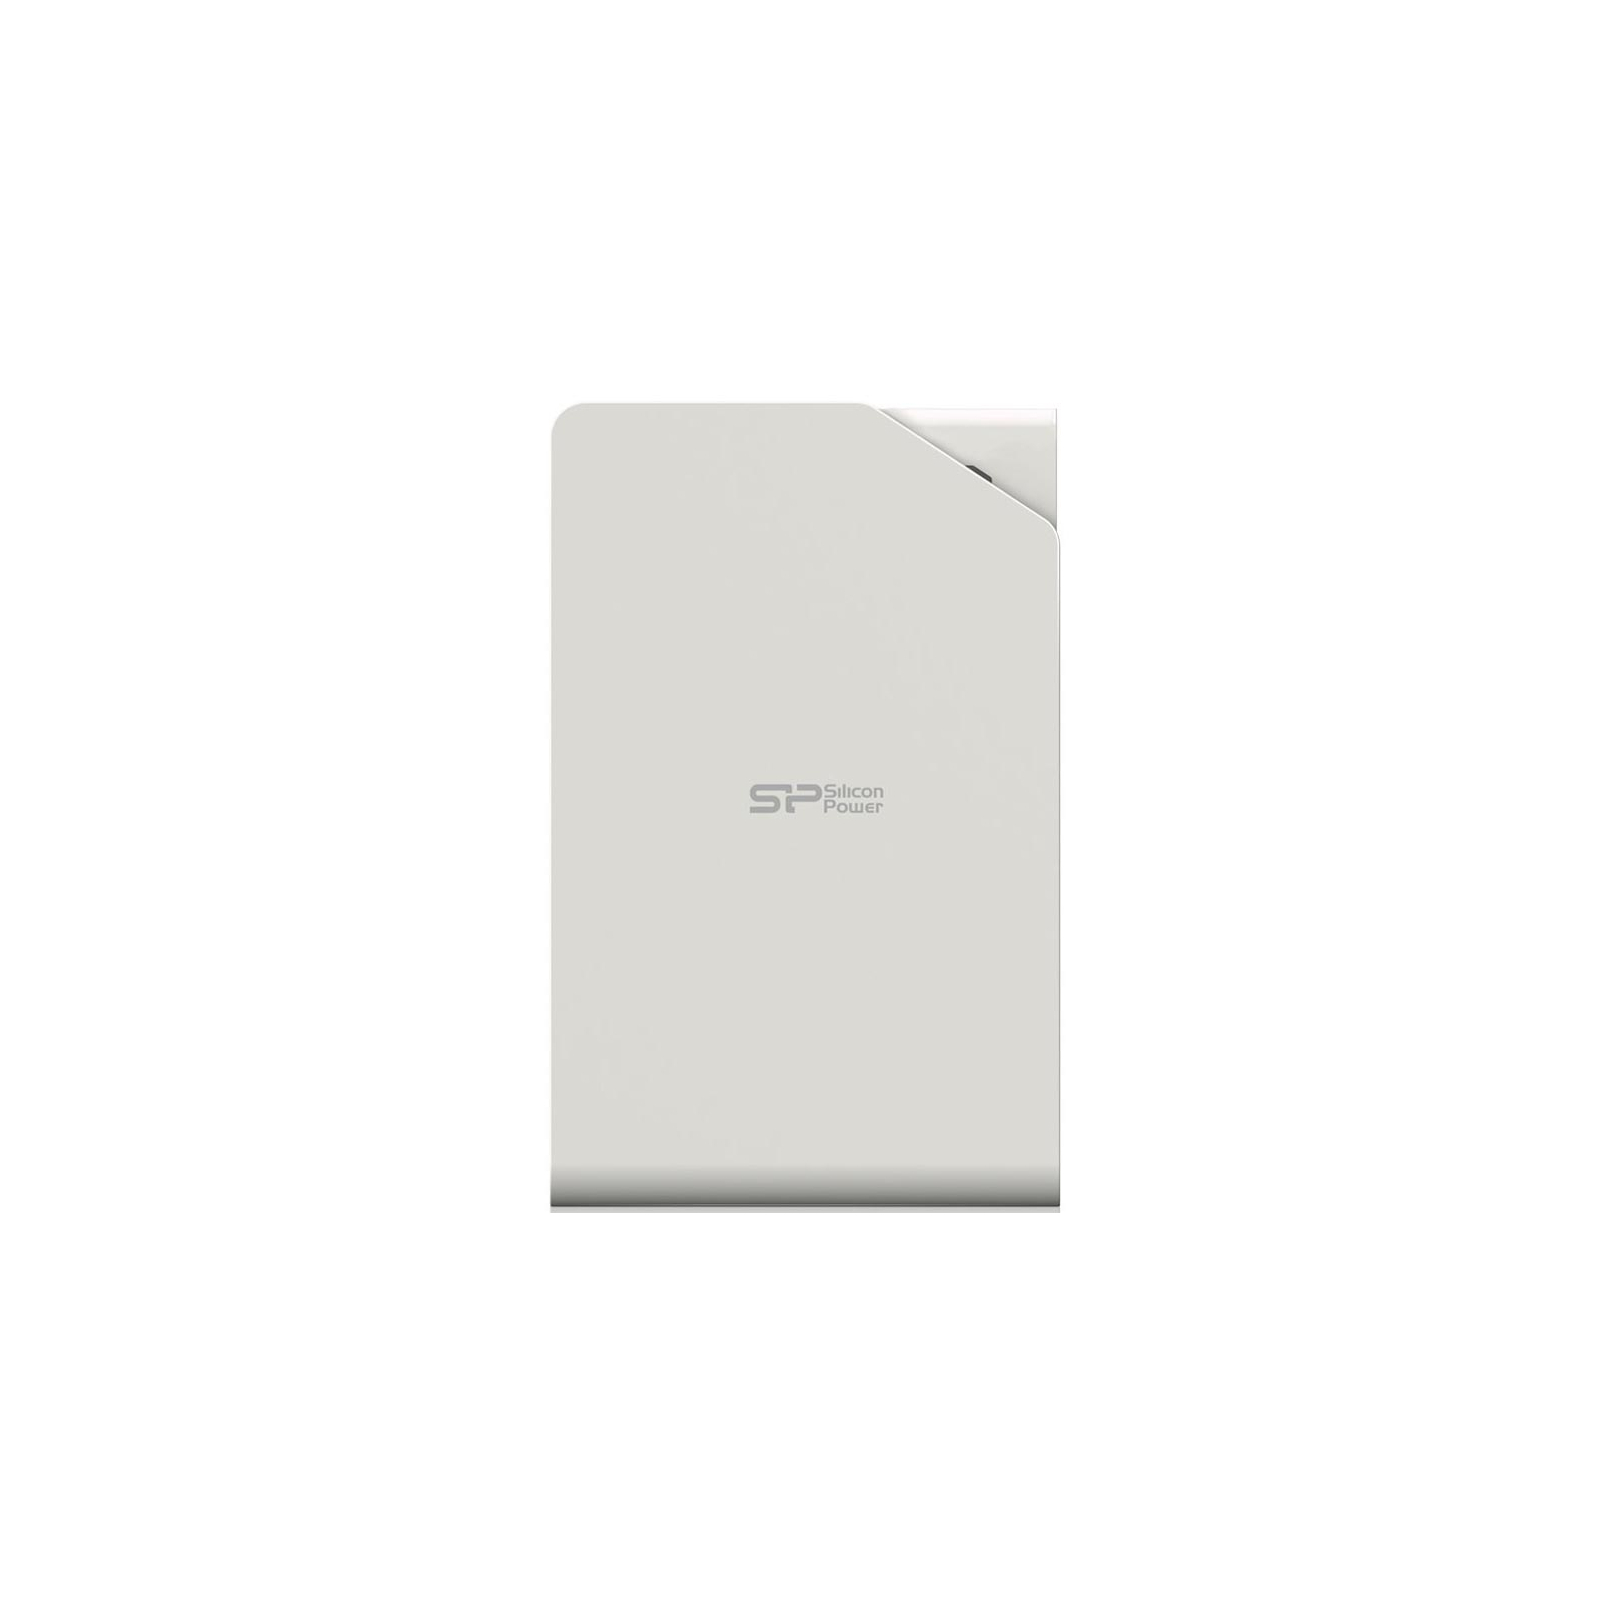 Зовнішній жорсткий диск 2.5" 2TB Silicon Power (SP020TBPHDS03S3W)